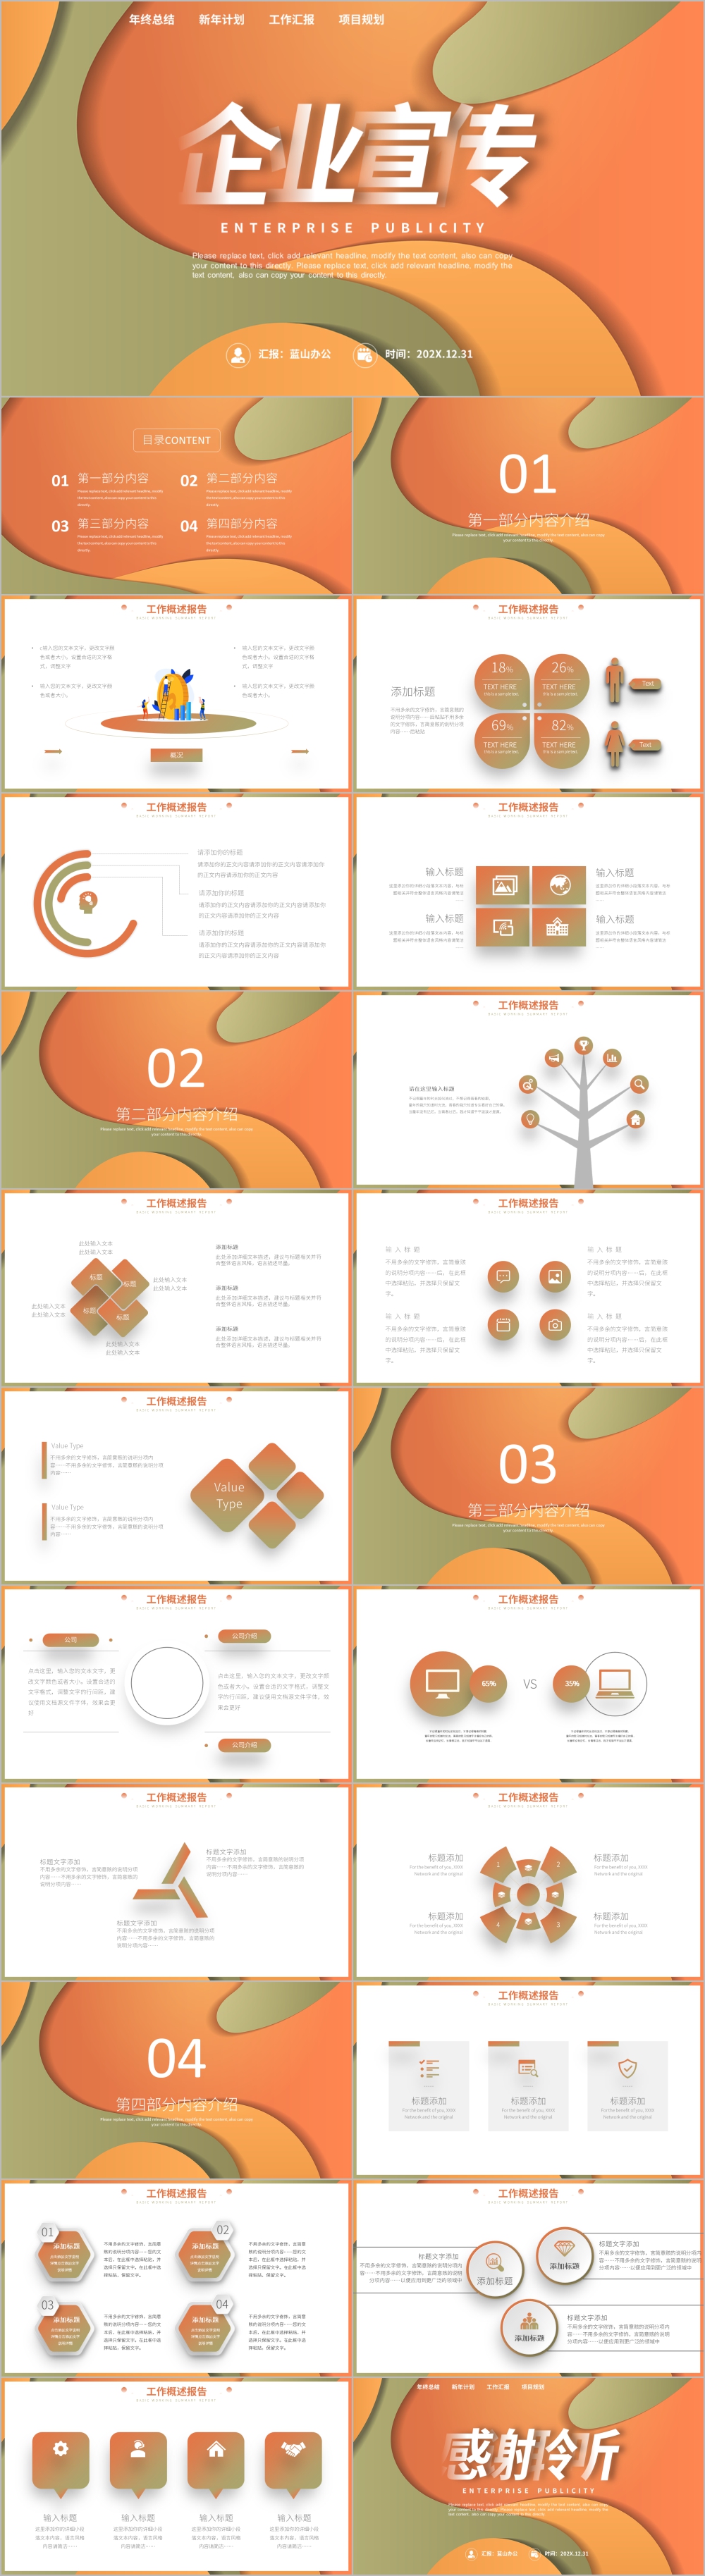 橙色几何图形商务公司介绍企业宣介绍ppt模板